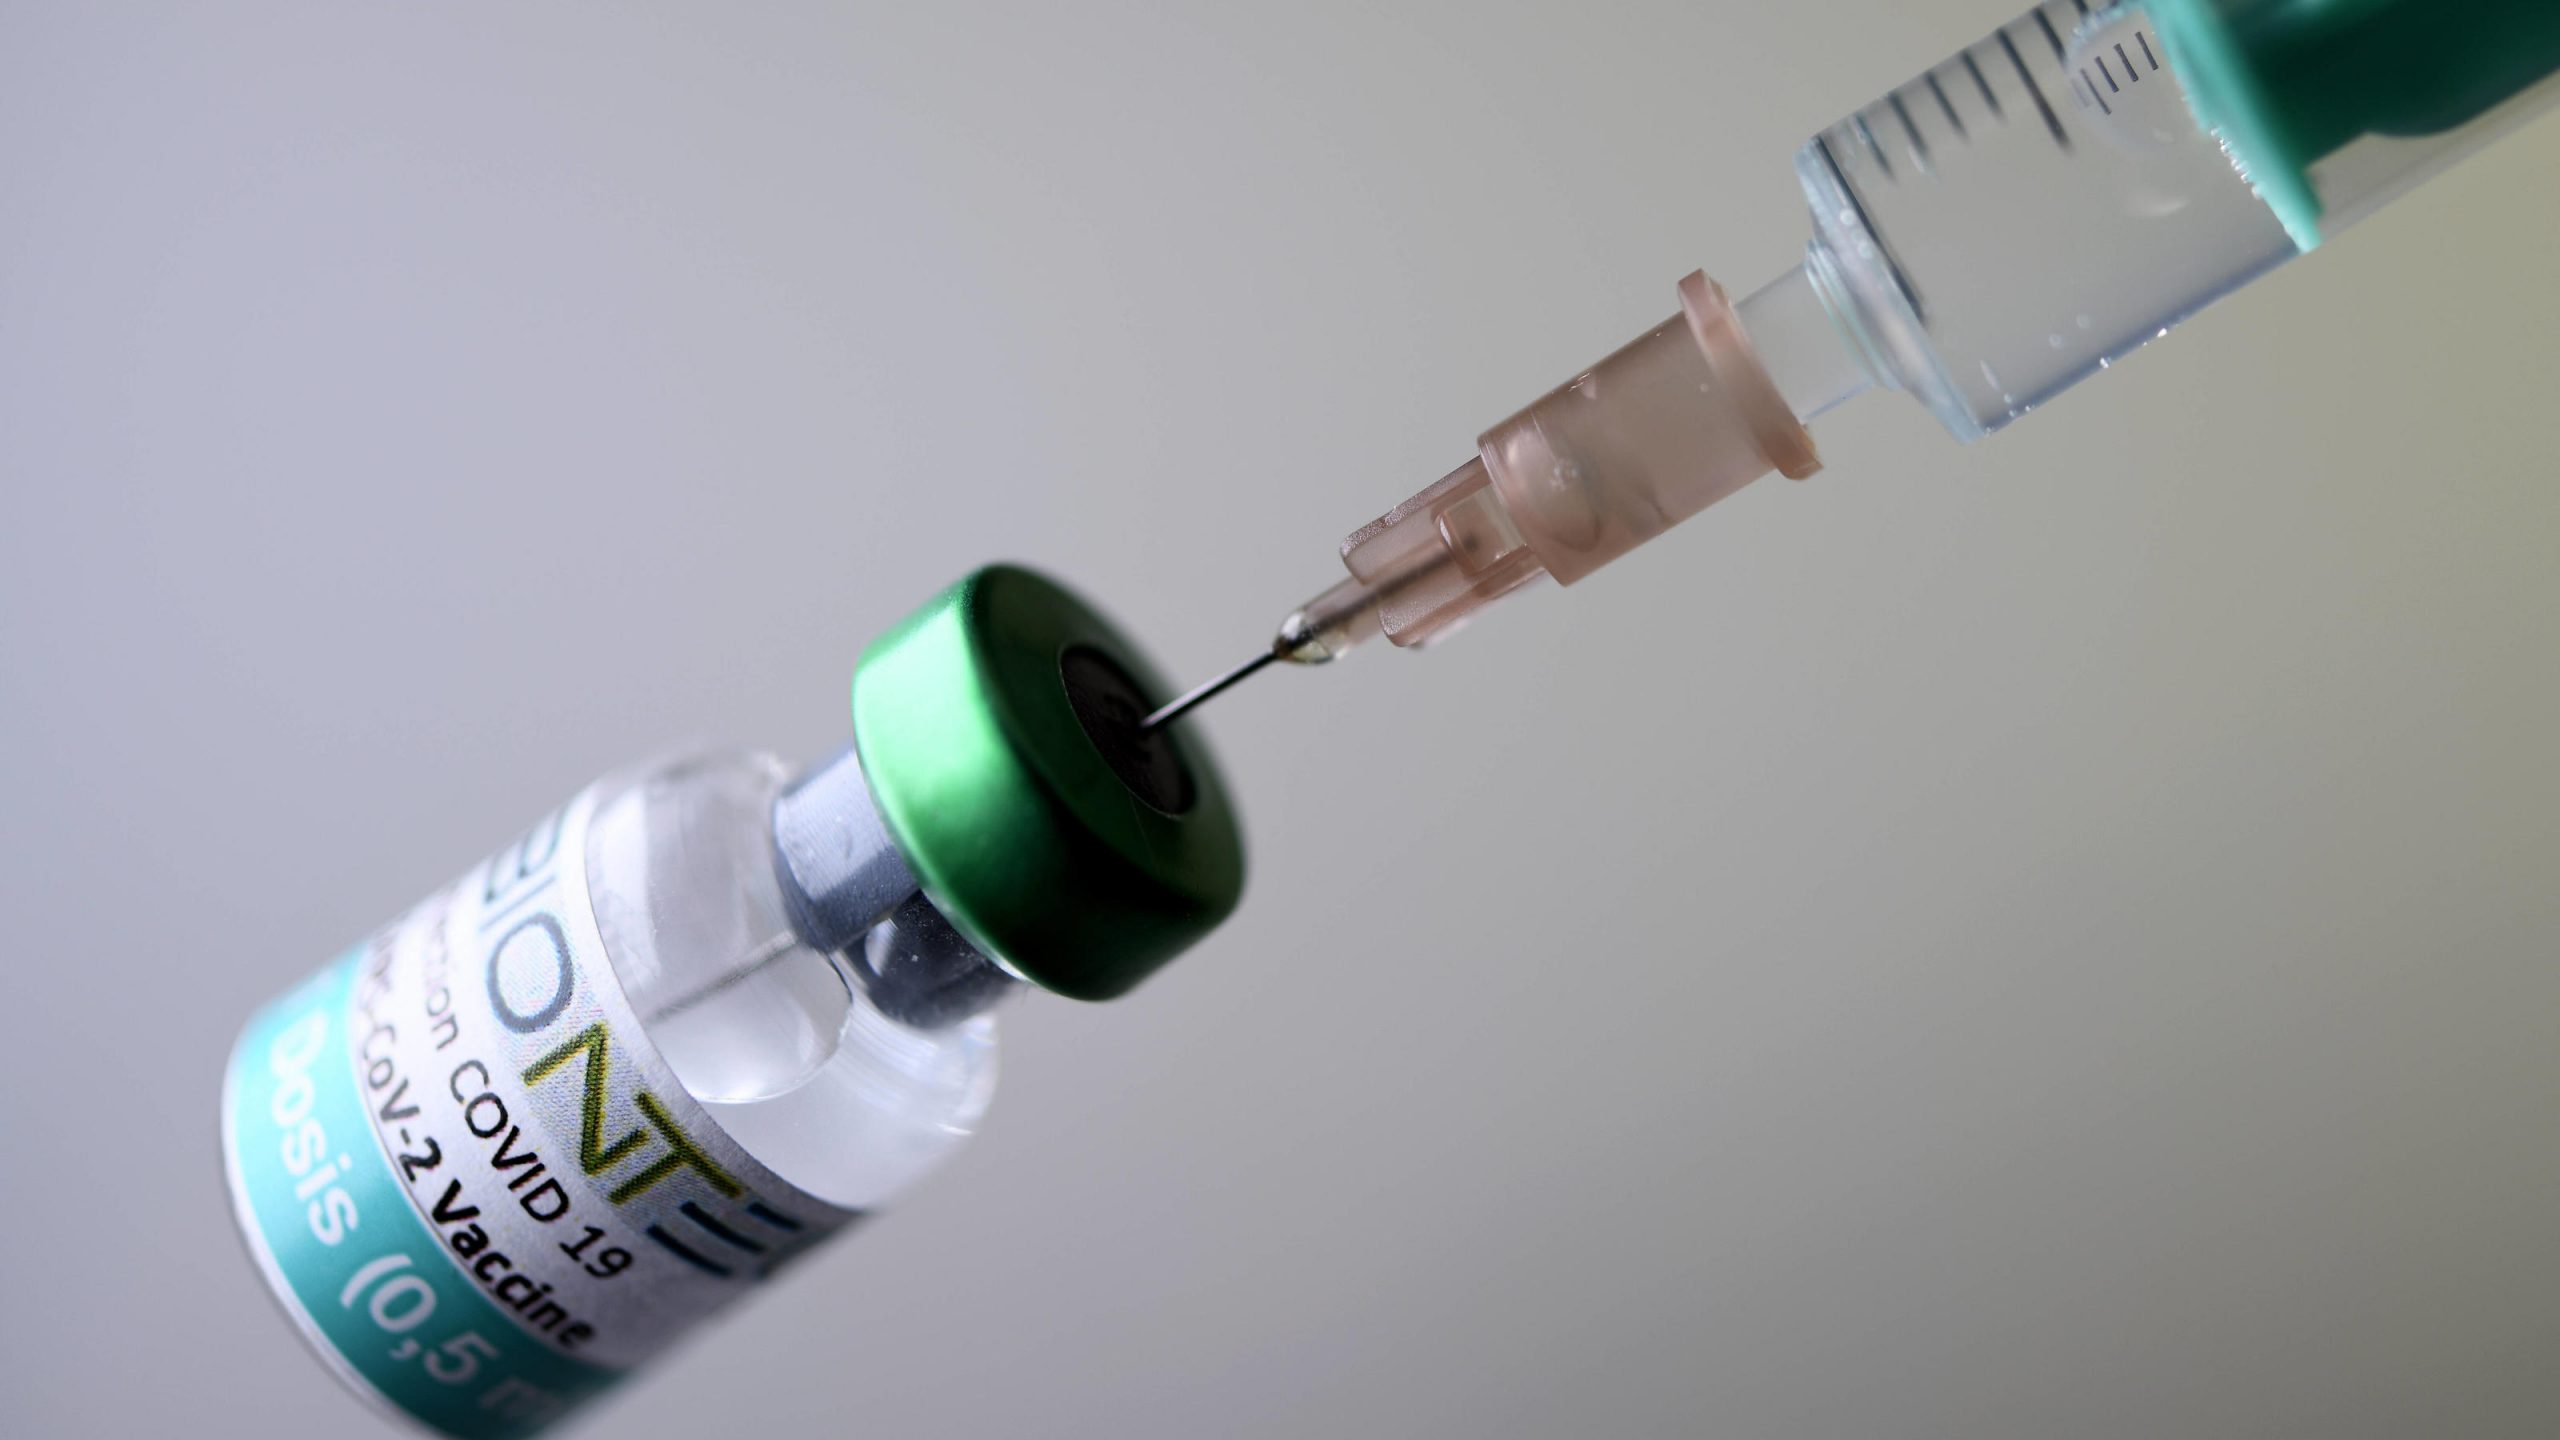 Biontech Corona-Impfstoff: Dies sind mögliche Nebenwirkungen